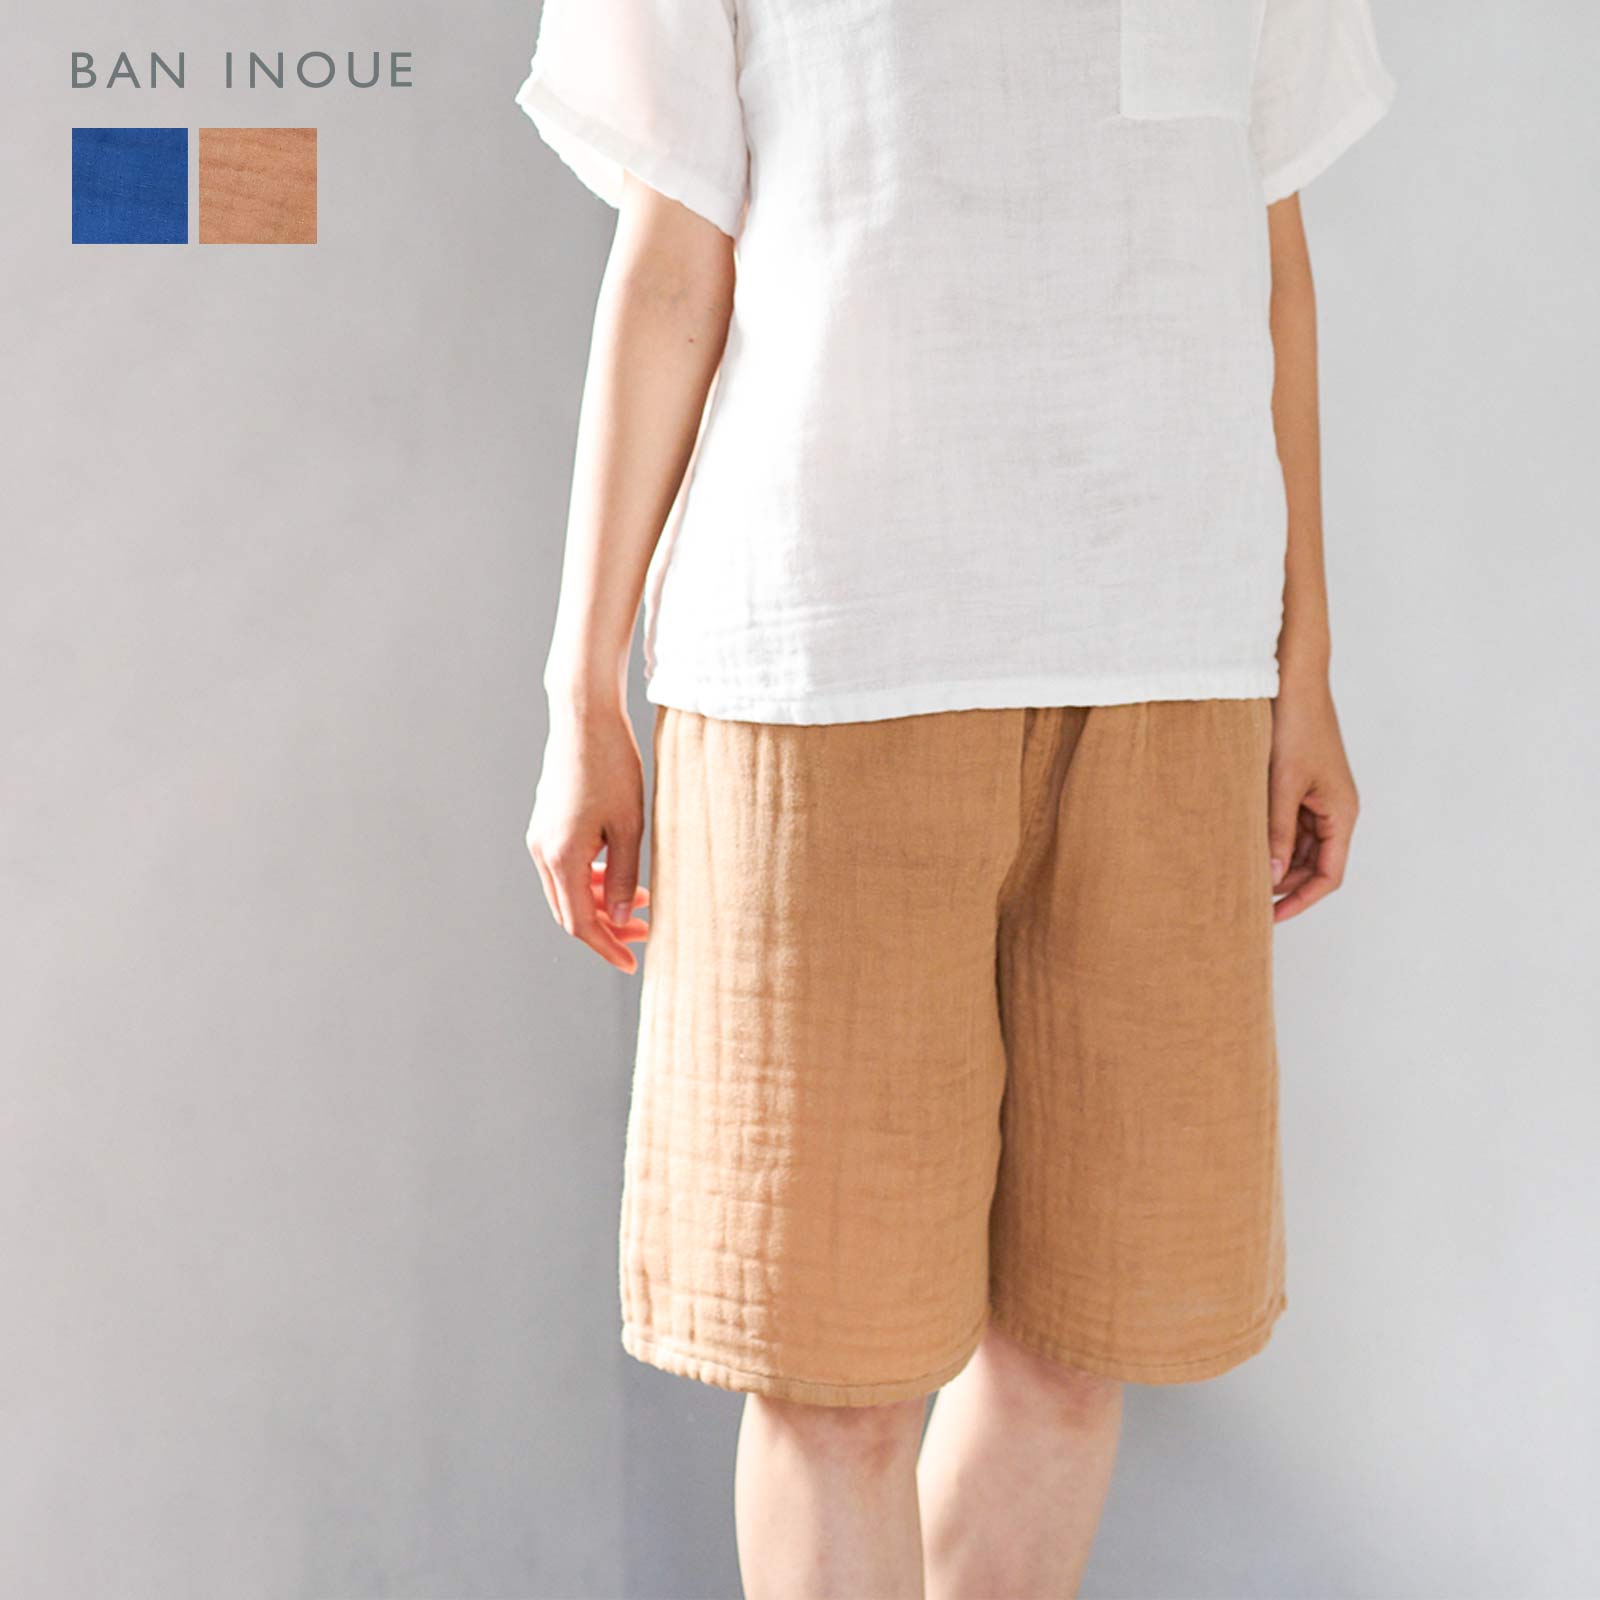 【公式】BAN INOUE 奈良特産の蚊帳生地で作った綿100％の軽やかで肌触りの良いユニセックスで着用できるハーフパンツです。